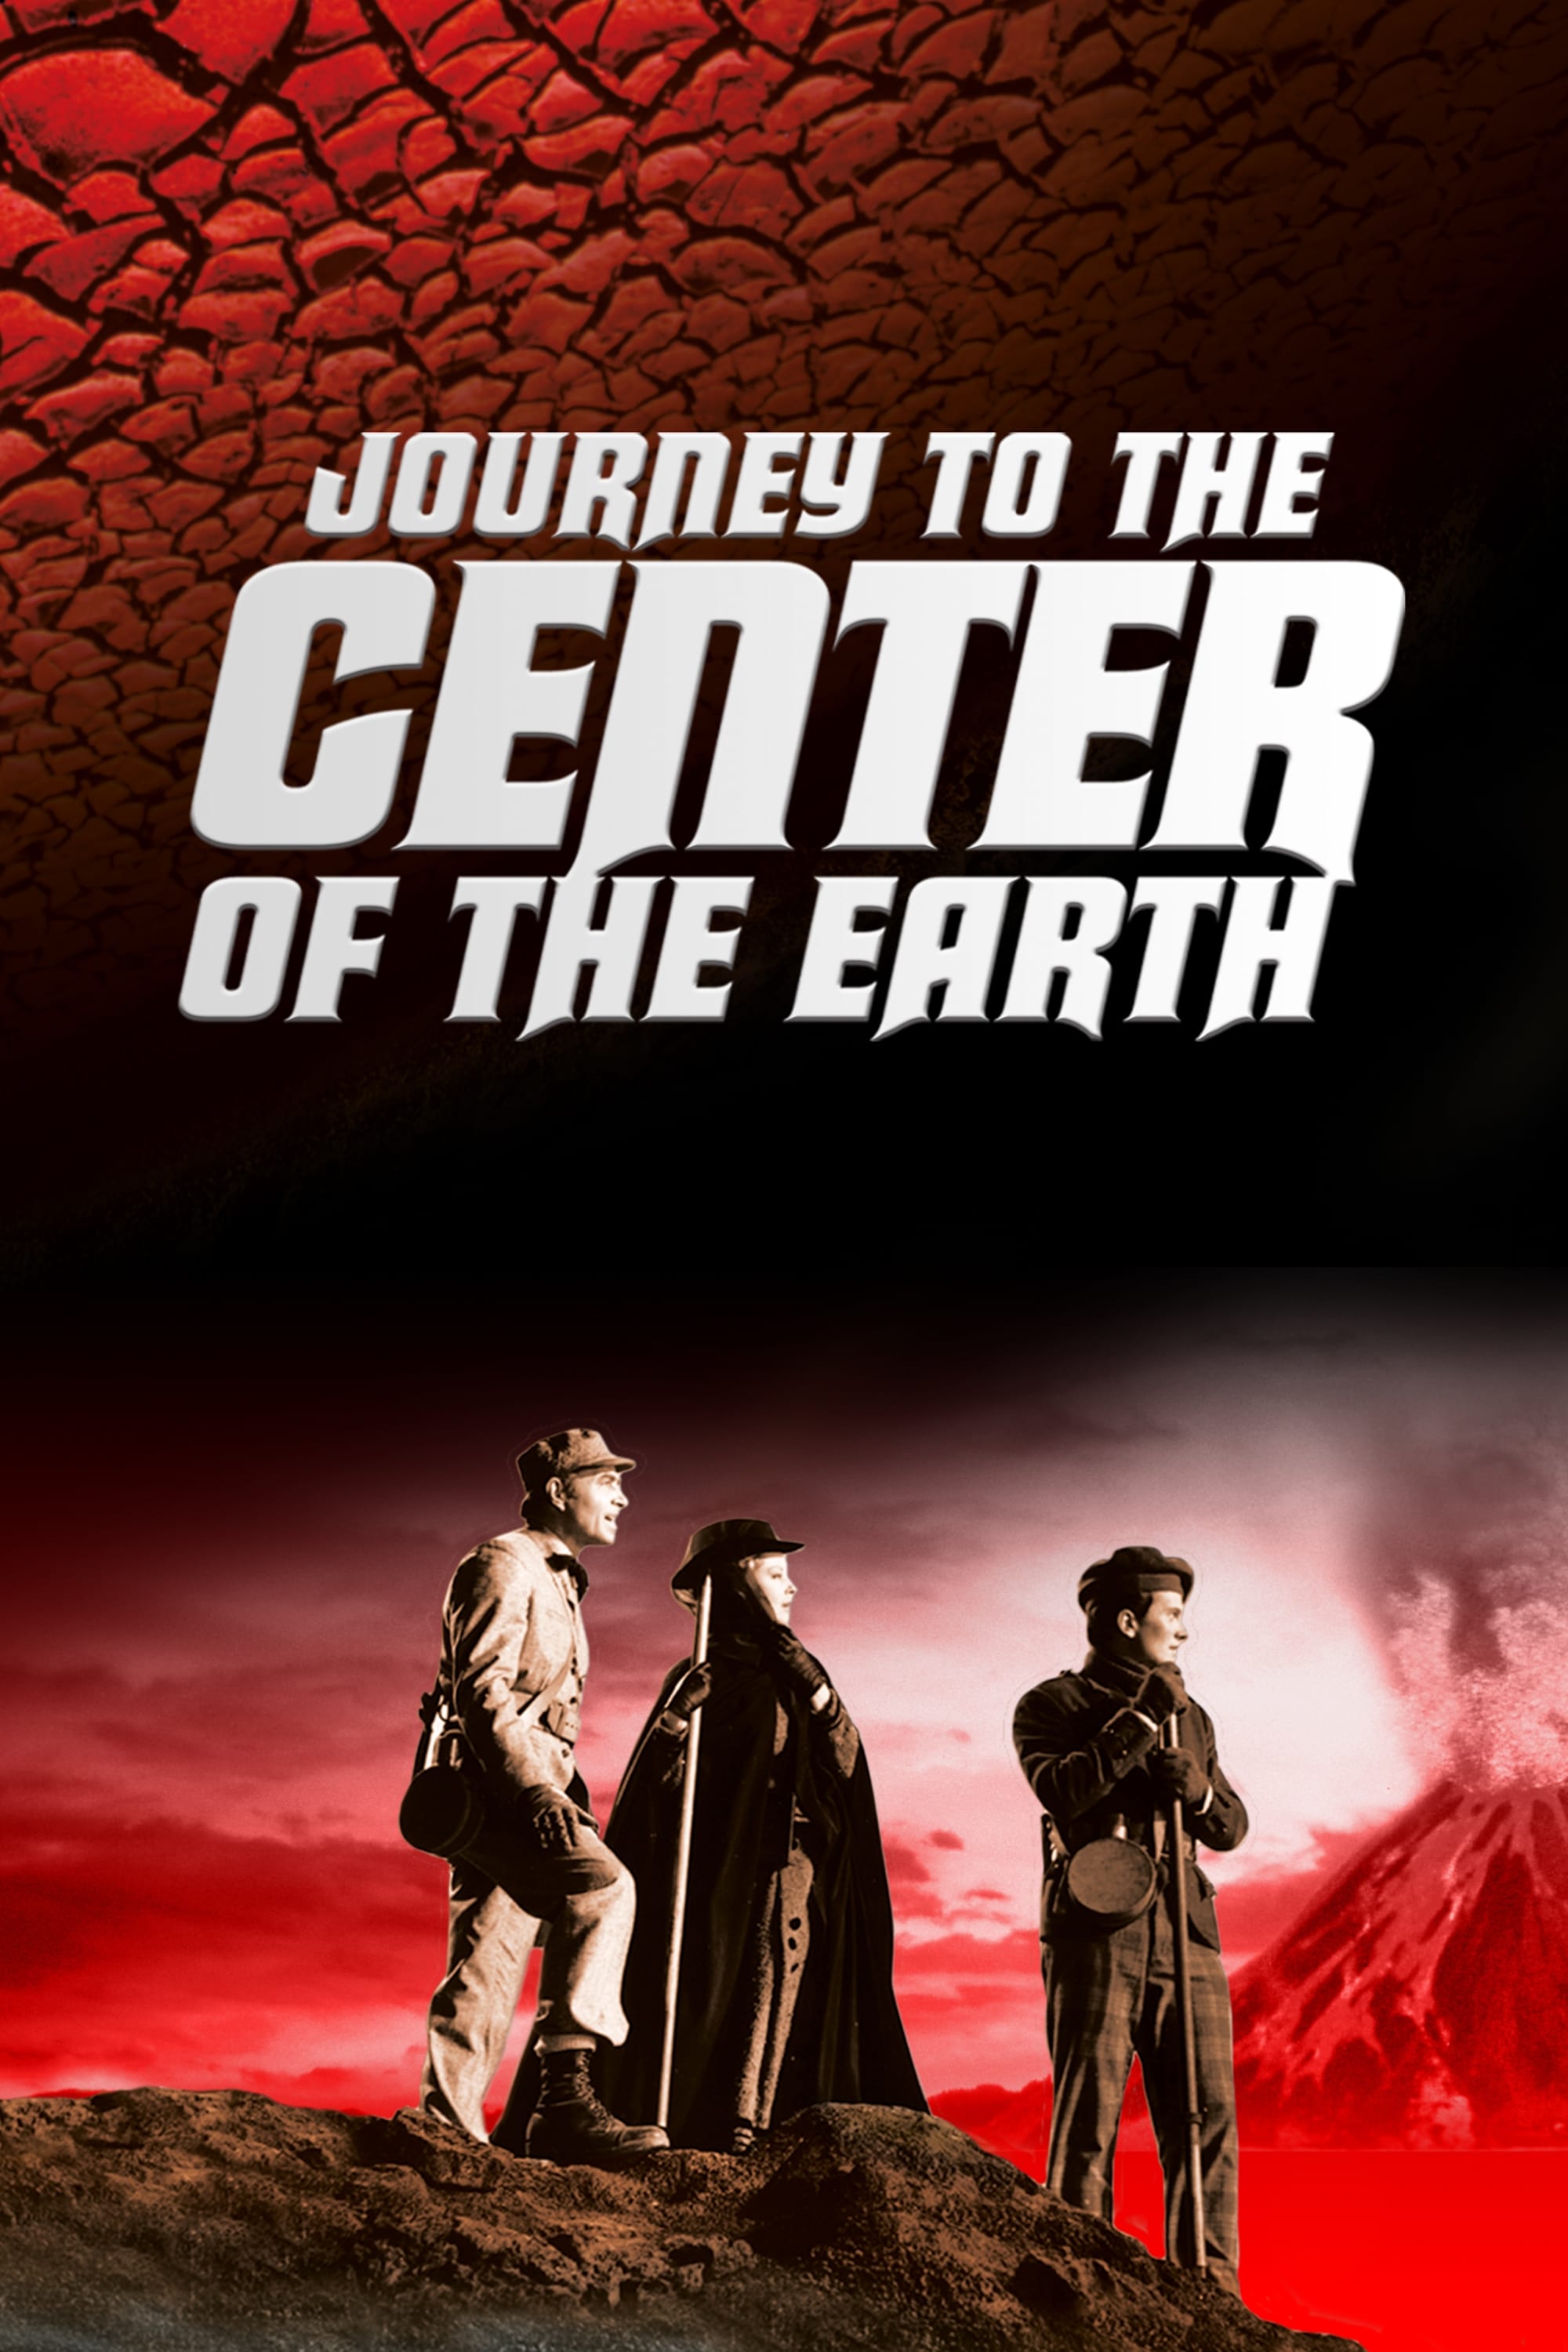 Viaje al centro de la Tierra